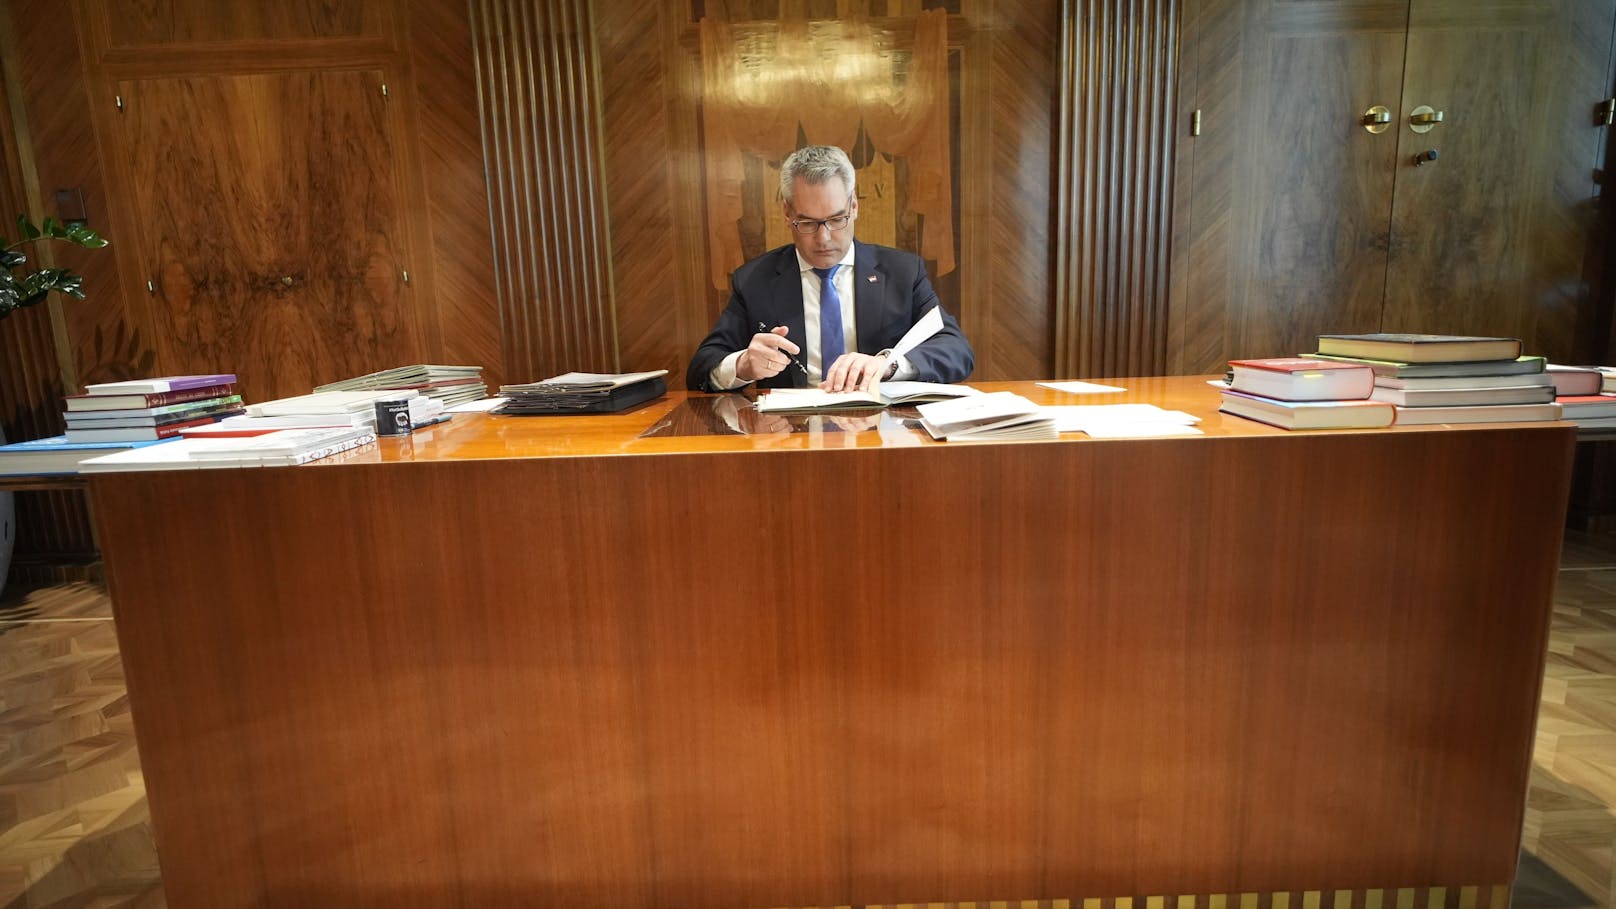 Schreibtisch statt Stehpult: Der Kanzler beim Aktenstudium in seinem Büro